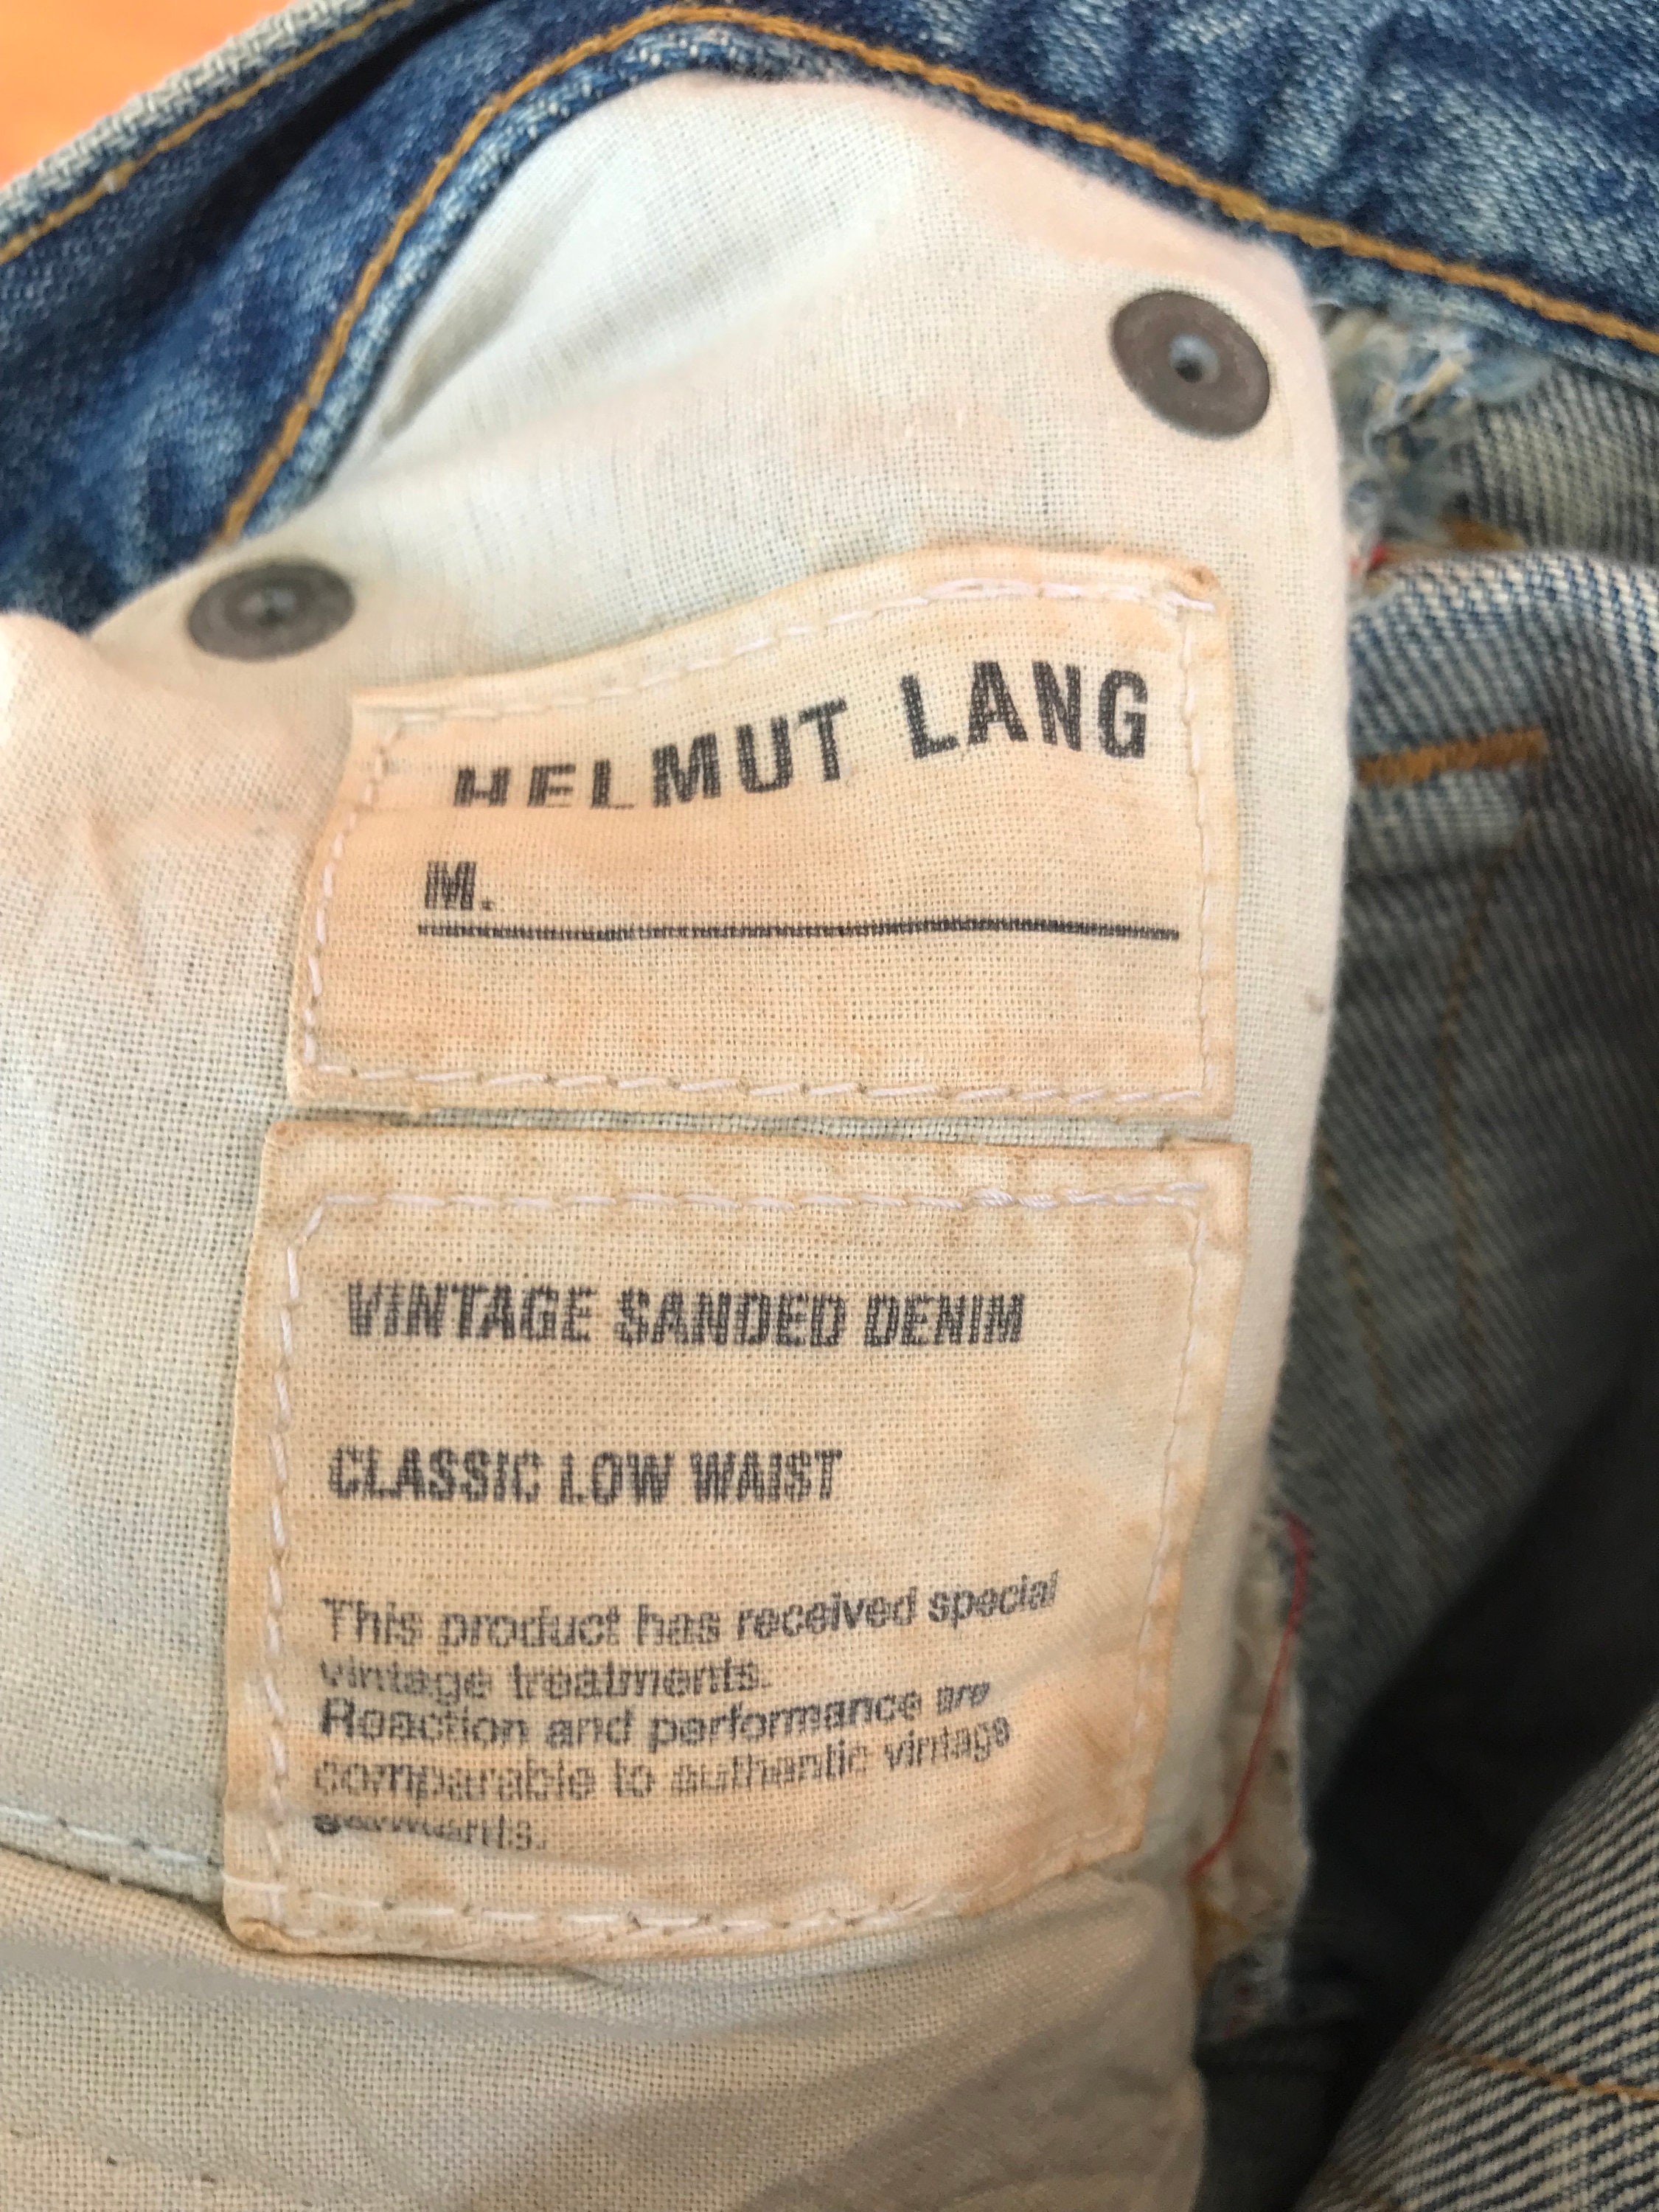 Vintage Helmut Lang Vintage Sanded Denim Pants / Size 26 - Etsy